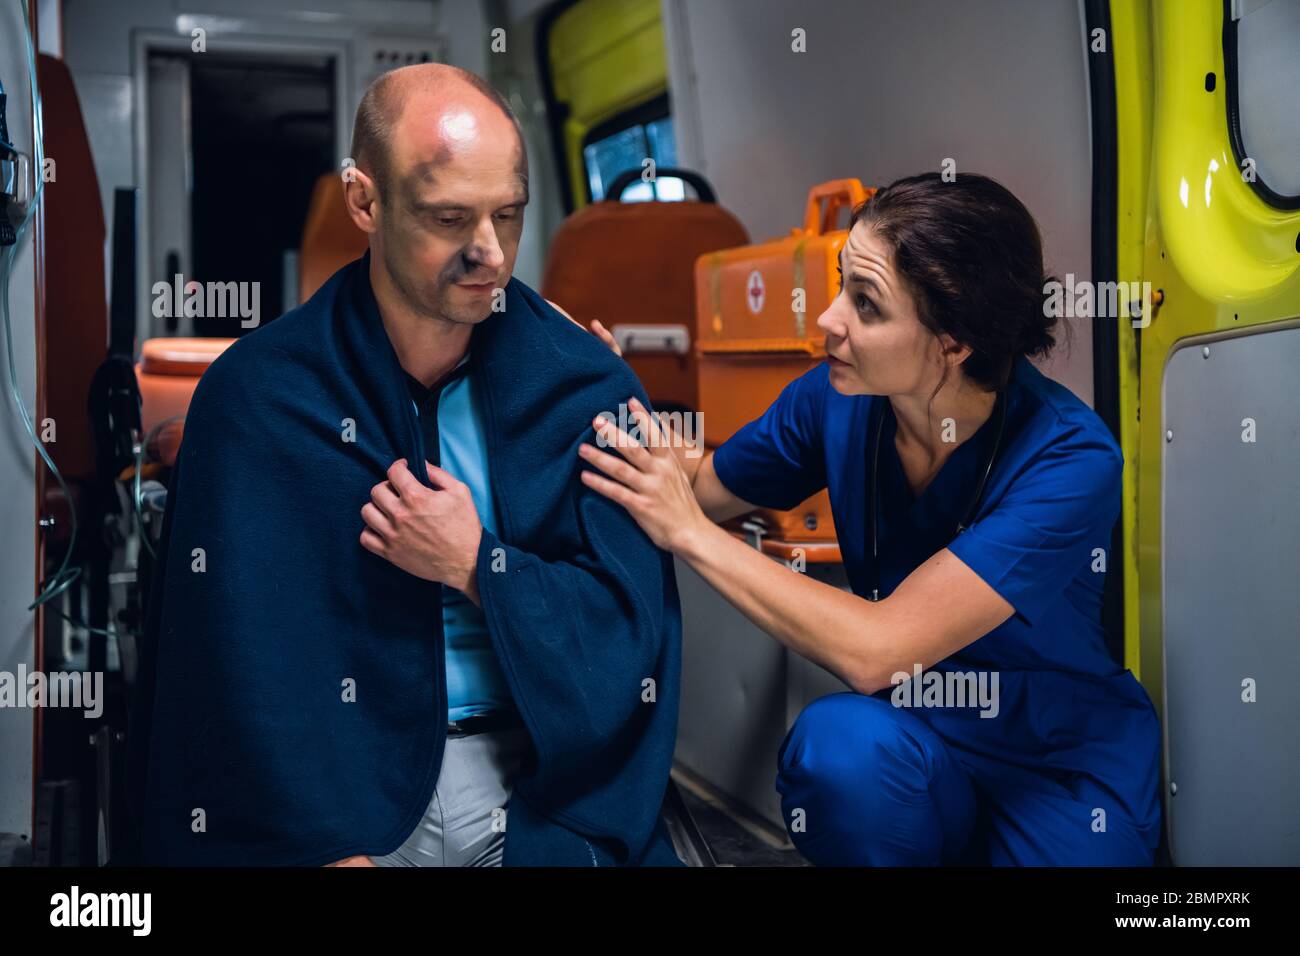 Une jeune femme dans un uniforme médical bleu essayant de réconforter un homme blessé, assis sur le bord d'une voiture d'ambulance dans une couverture Banque D'Images